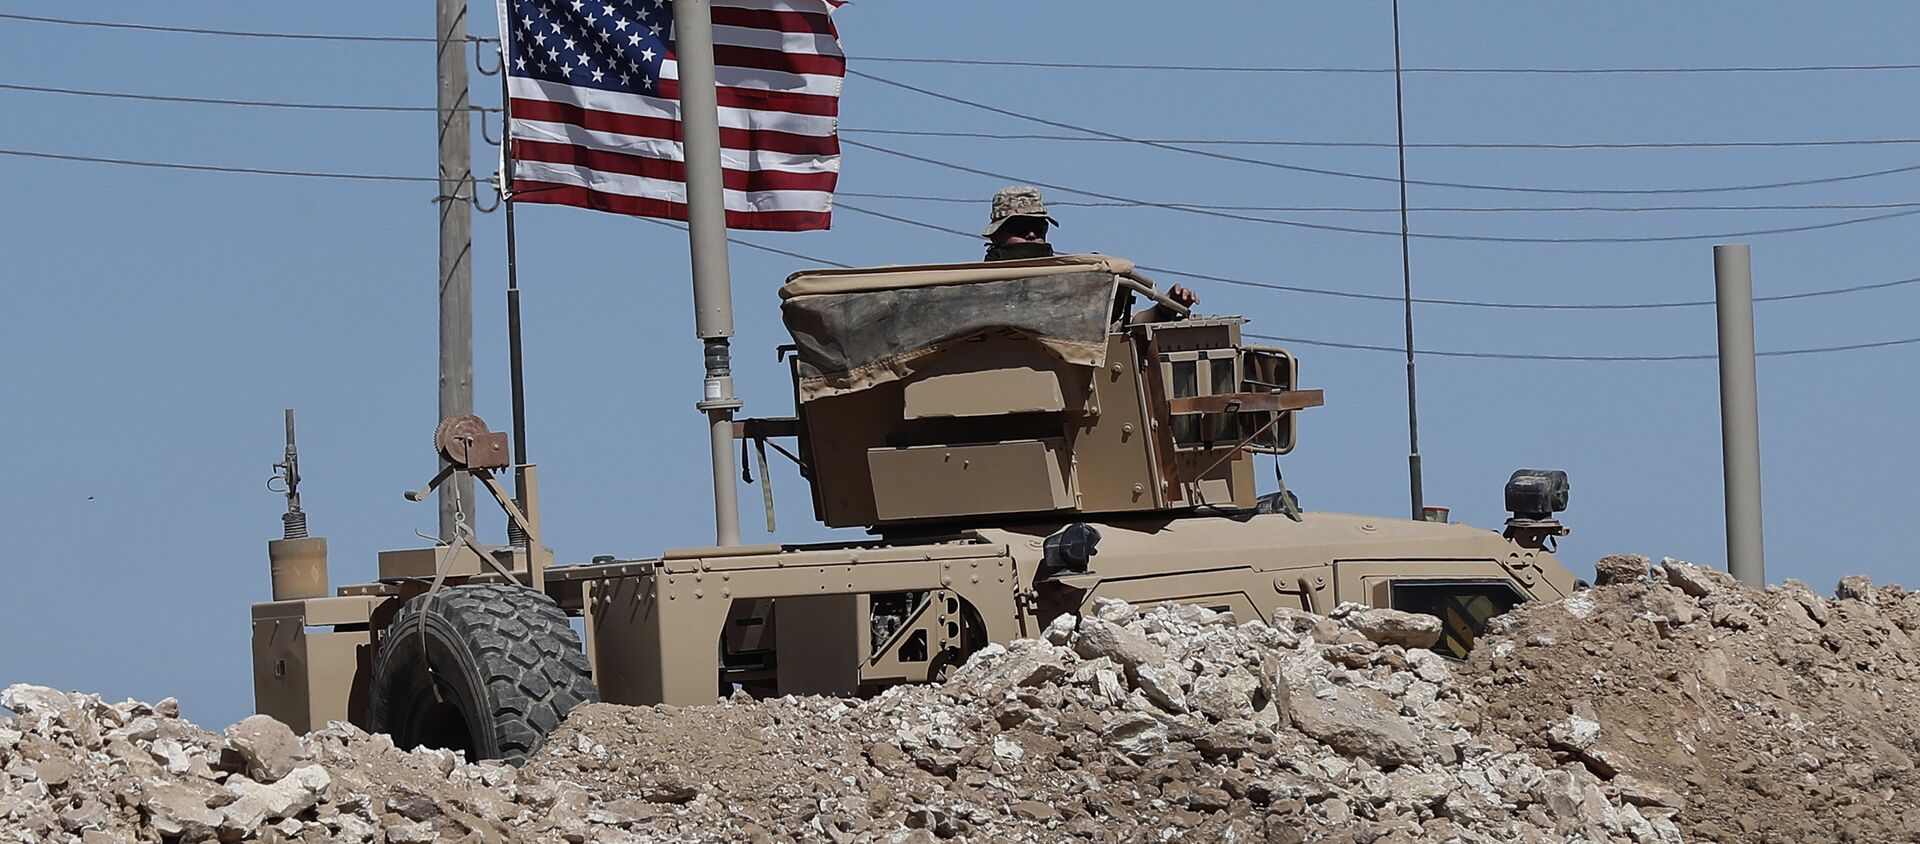 Un soldat américain est assis sur un véhicule blindé derrière une barrière de sable à une position nouvellement installée près de la ligne de front tendue entre le Conseil militaire syrien de Manbij soutenu par les États-Unis et les combattants soutenus par la Turquie, à Manbij, dans le nord de la Syrie, le mercredi 4 avril 2018 - Sputnik Afrique, 1920, 11.02.2021